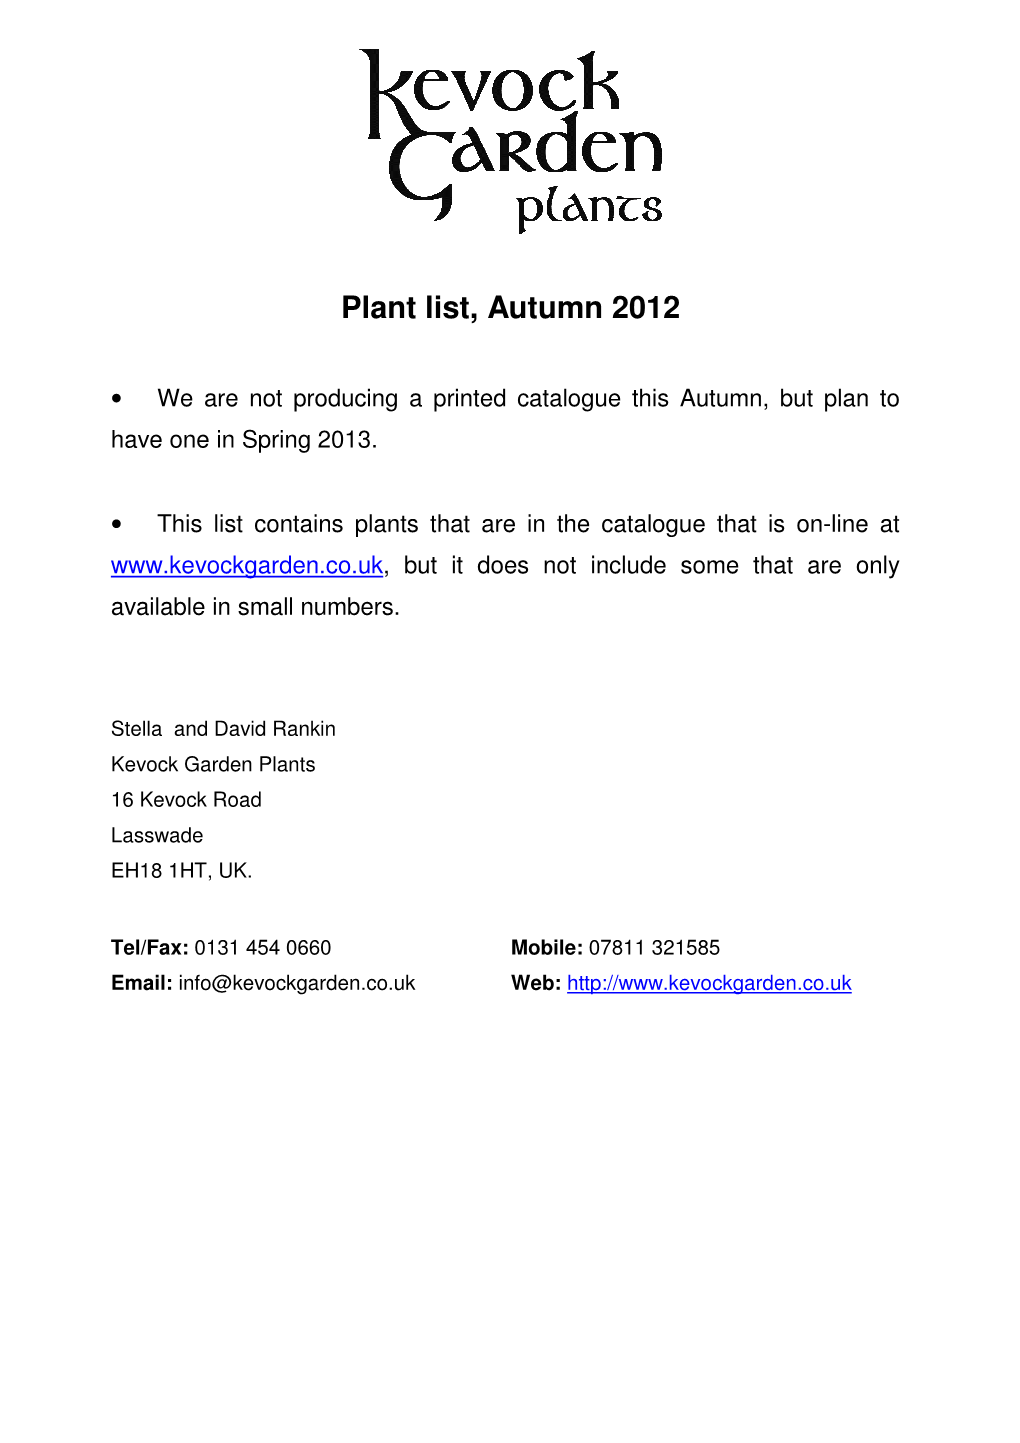 Plant List, Autumn 2012